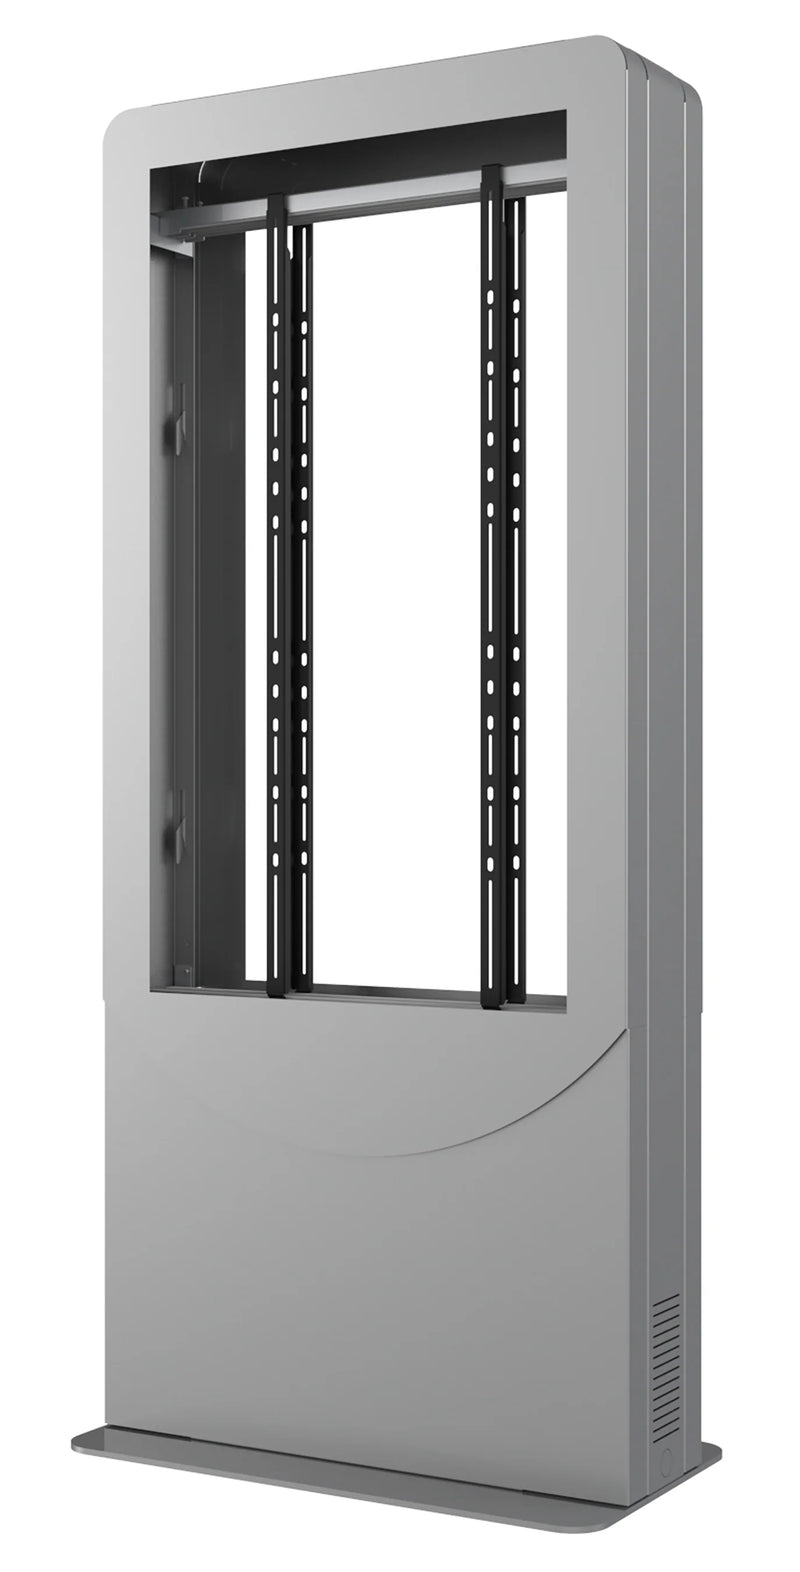 Peerless-AV KIPC2550B-S Floorstanding Back-to-Back Portrait Kiosk for Two 50" Displays up to 1.81" Deep (Silver)